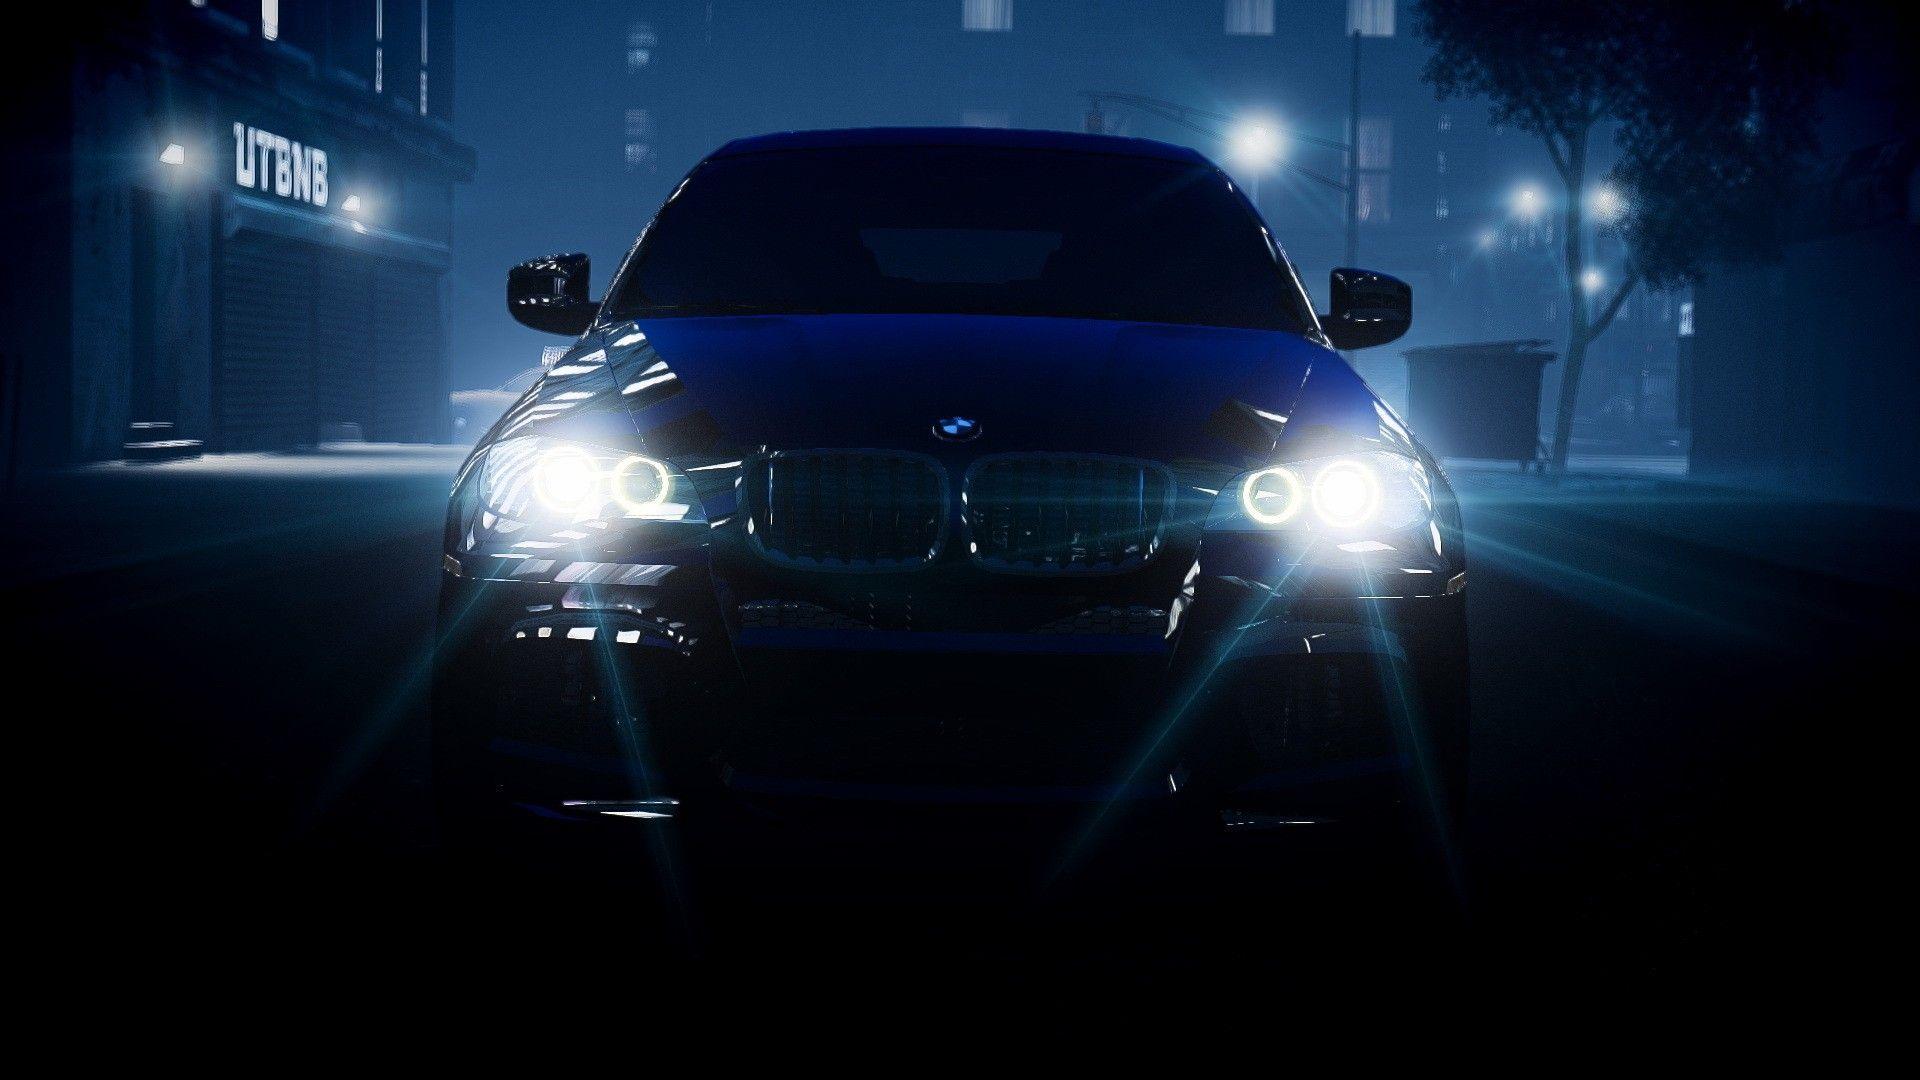 BMW Lights Headlights X6 Night HD wallpaper